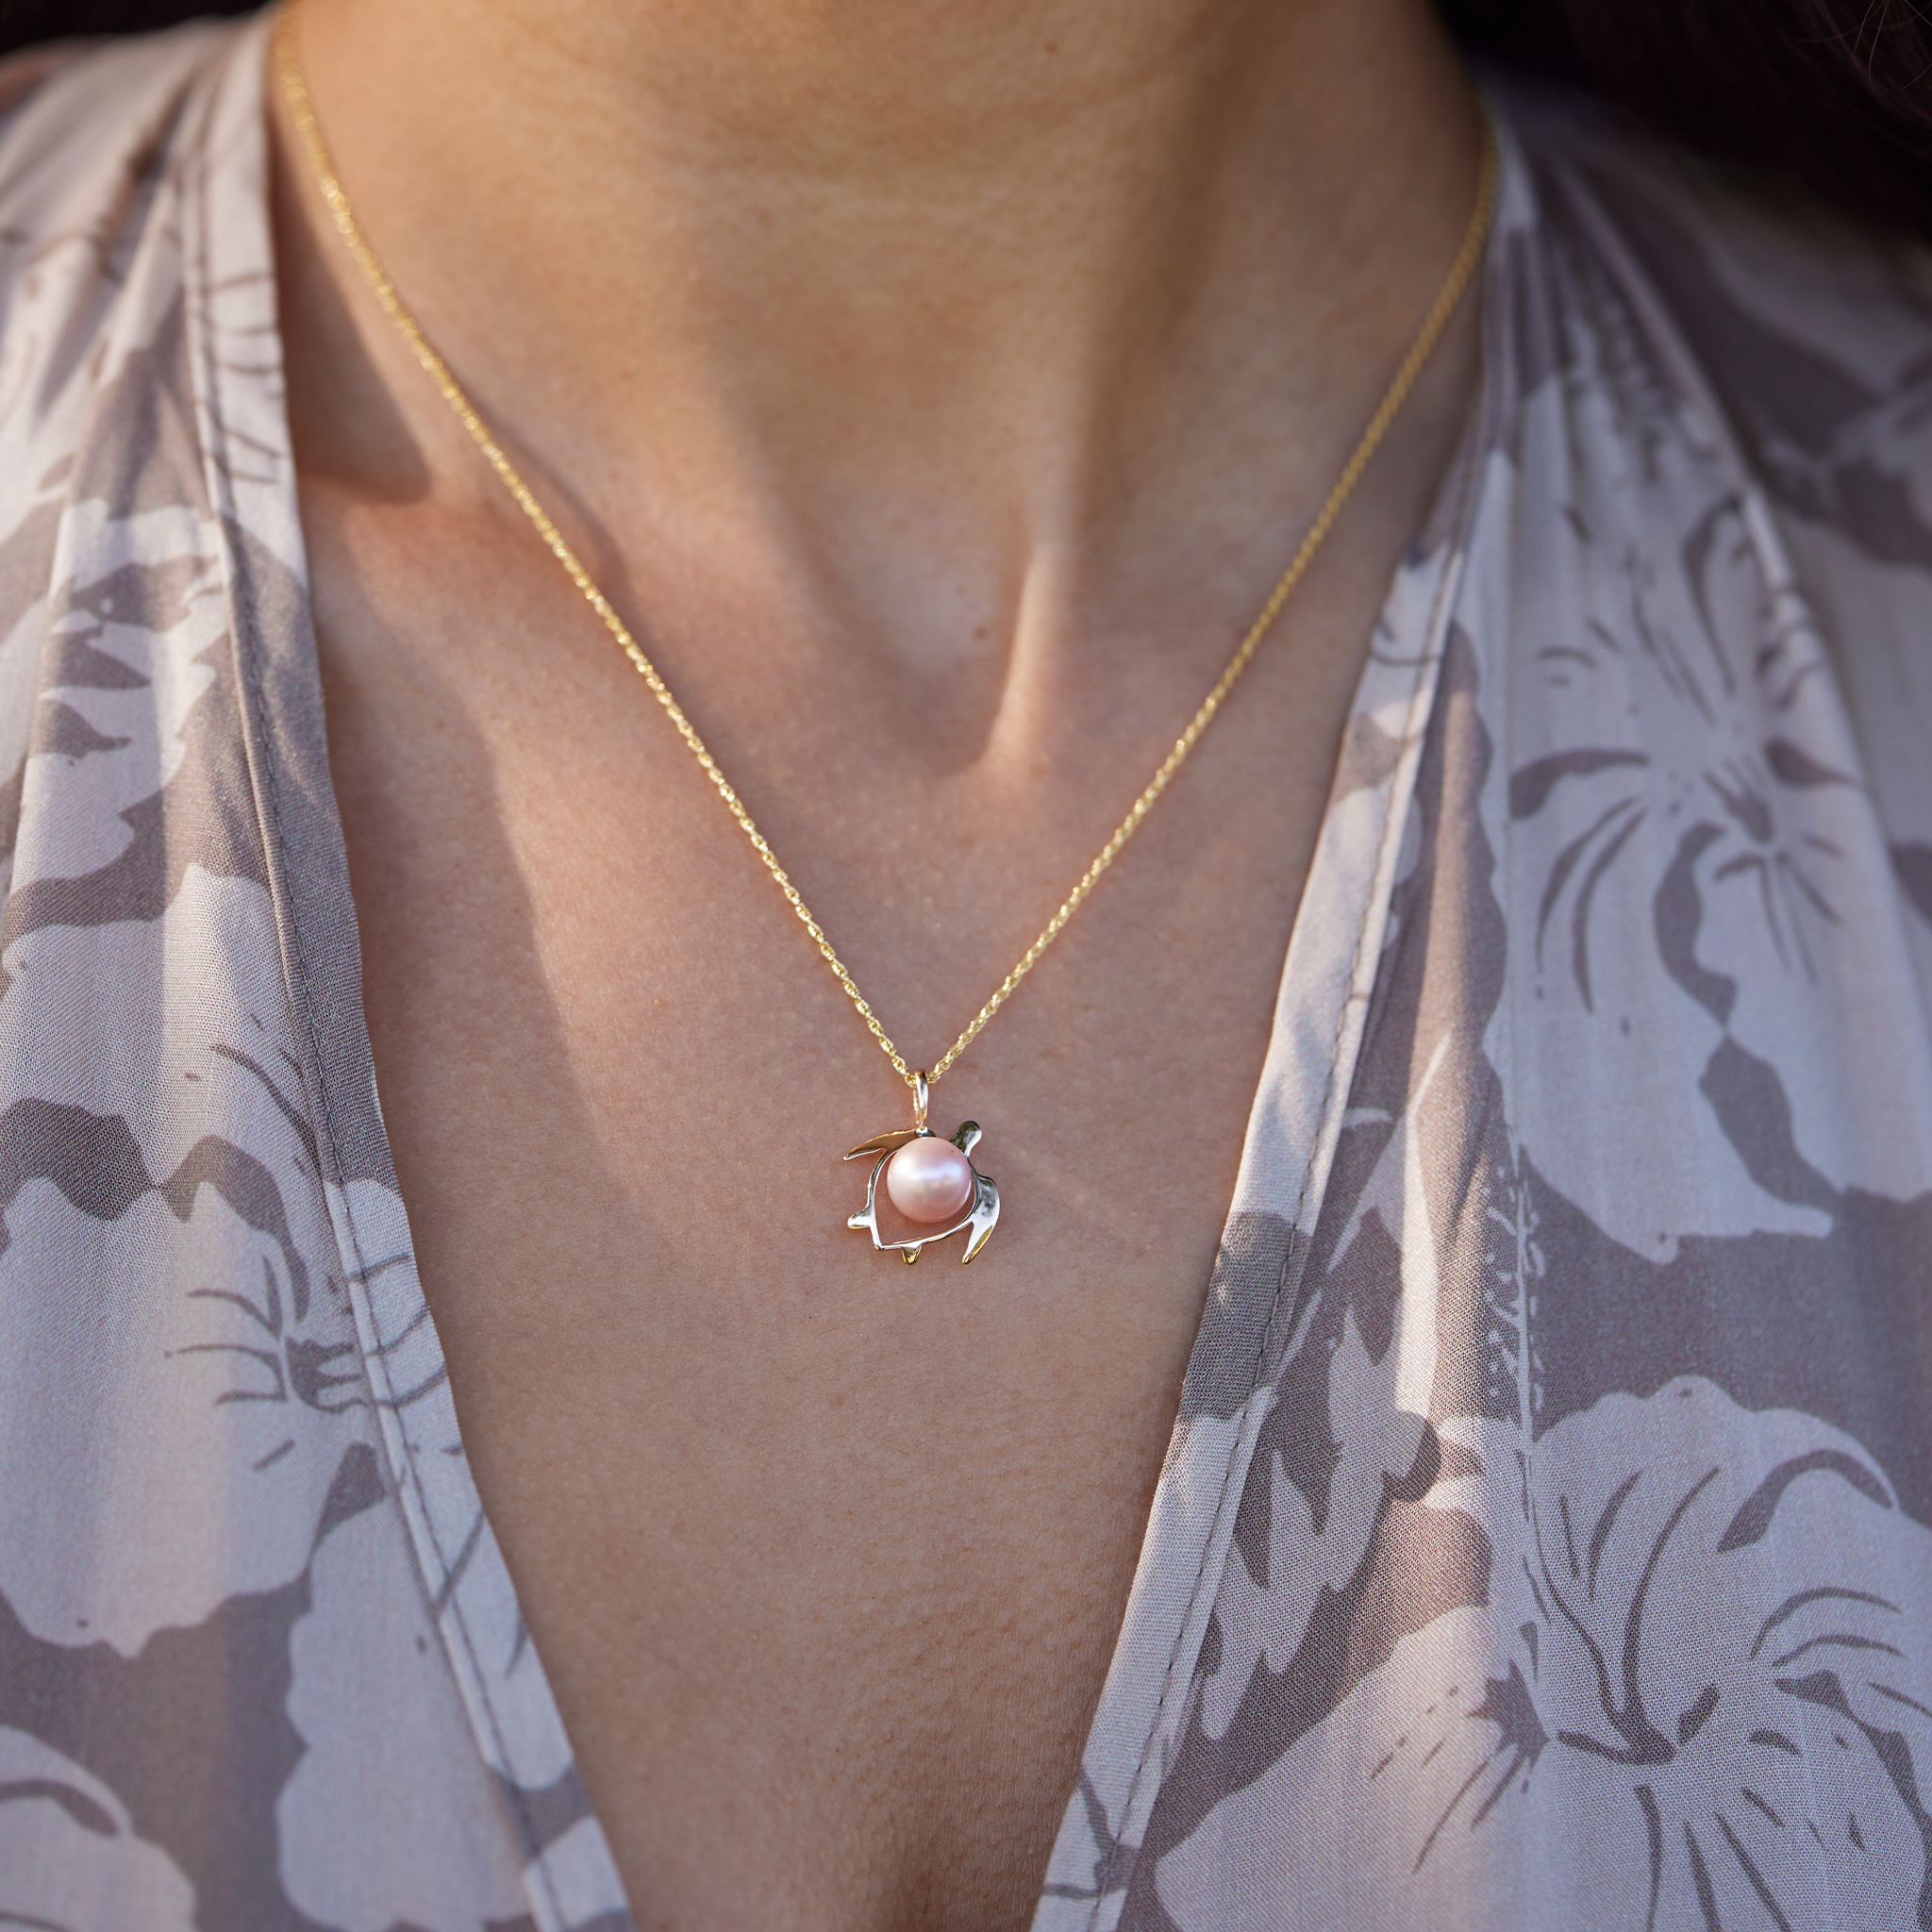 Choisissez un pendentif de perle Honu (tortue) en or - 16 mm